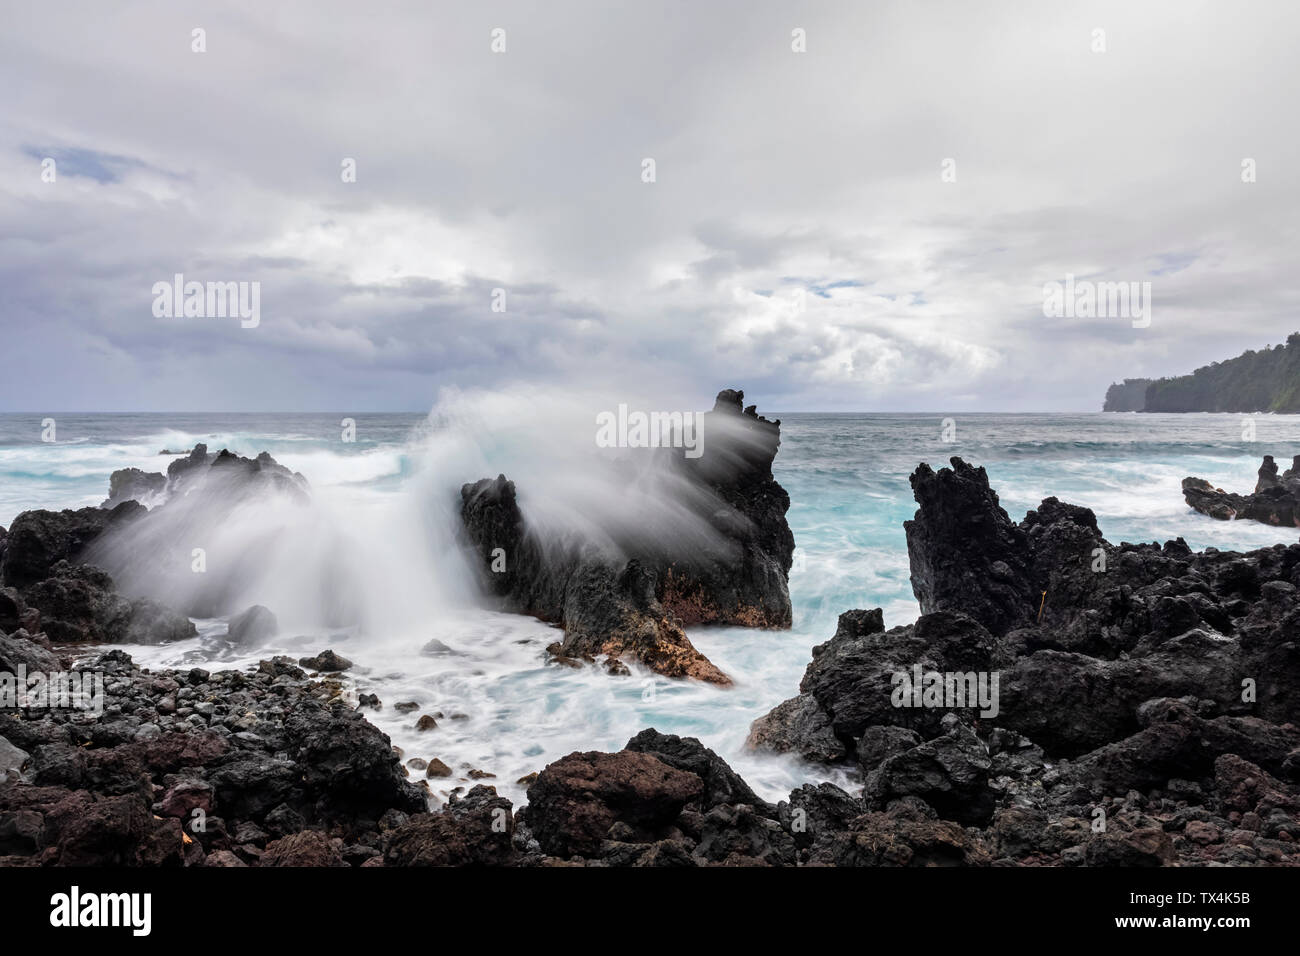 USA, Hawaii, Big Island, laupahoehoe Beach Park, Surf brechen an der felsigen Küste Stockfoto